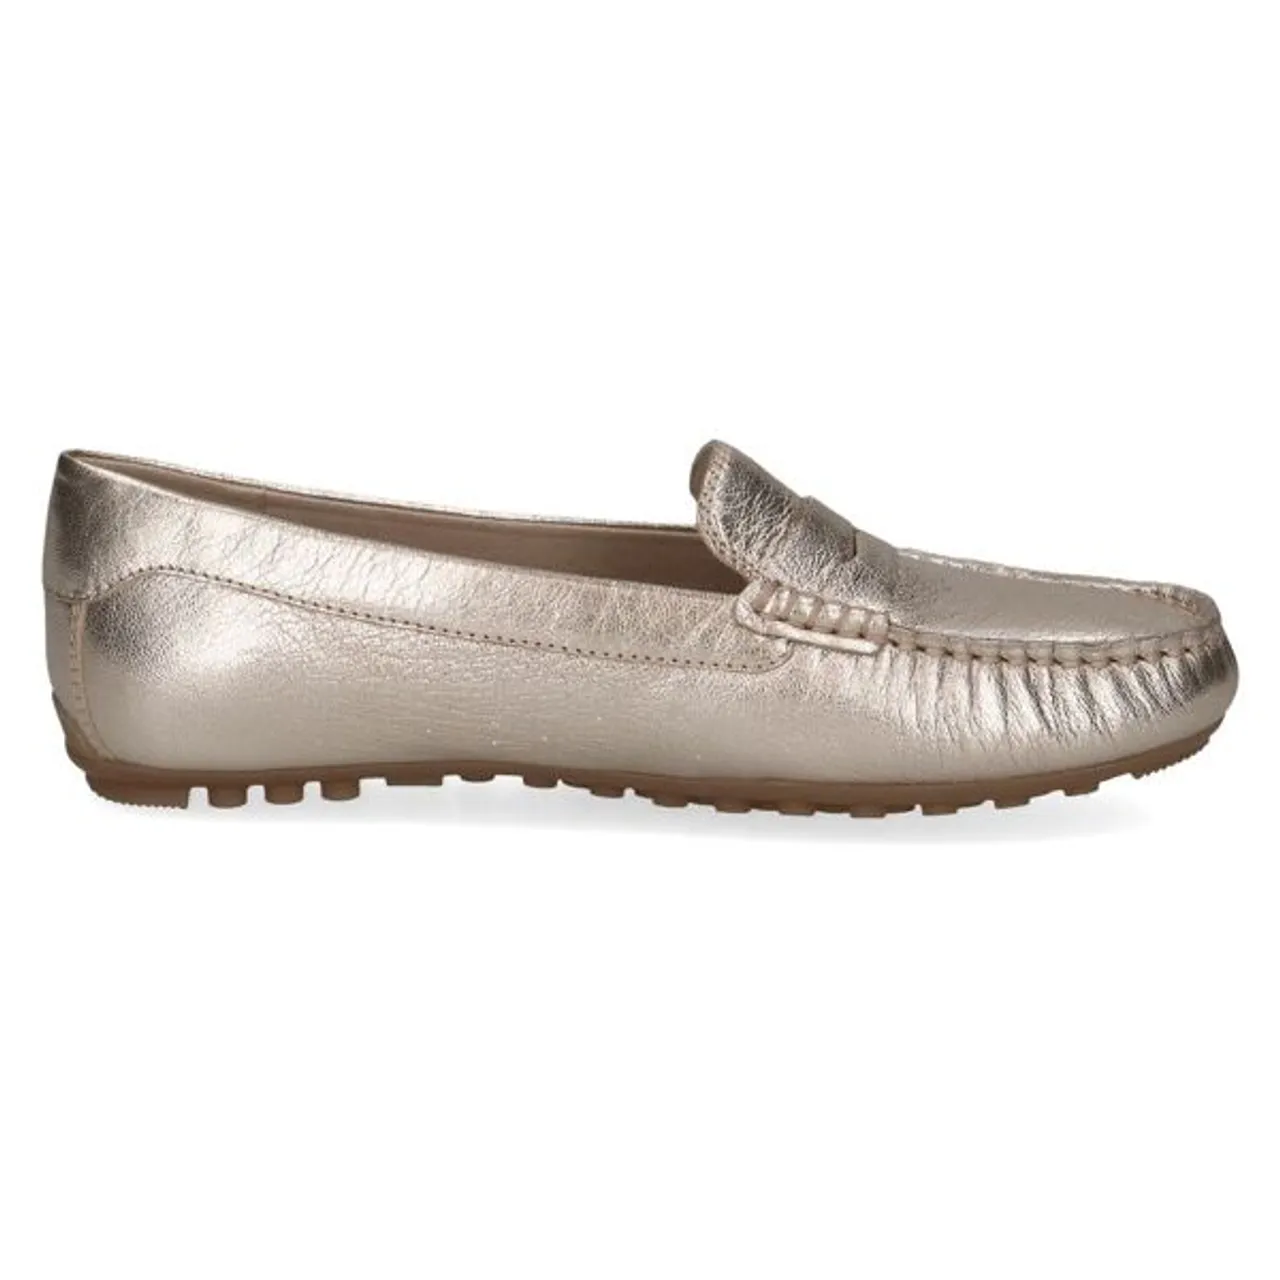 Mokassin CAPRICE Gr. 37, silberfarben (platinfarben, metallic) Damen Schuhe Slip ons Loafer, Halbschuh, Slipper mit schönem Zierriegel